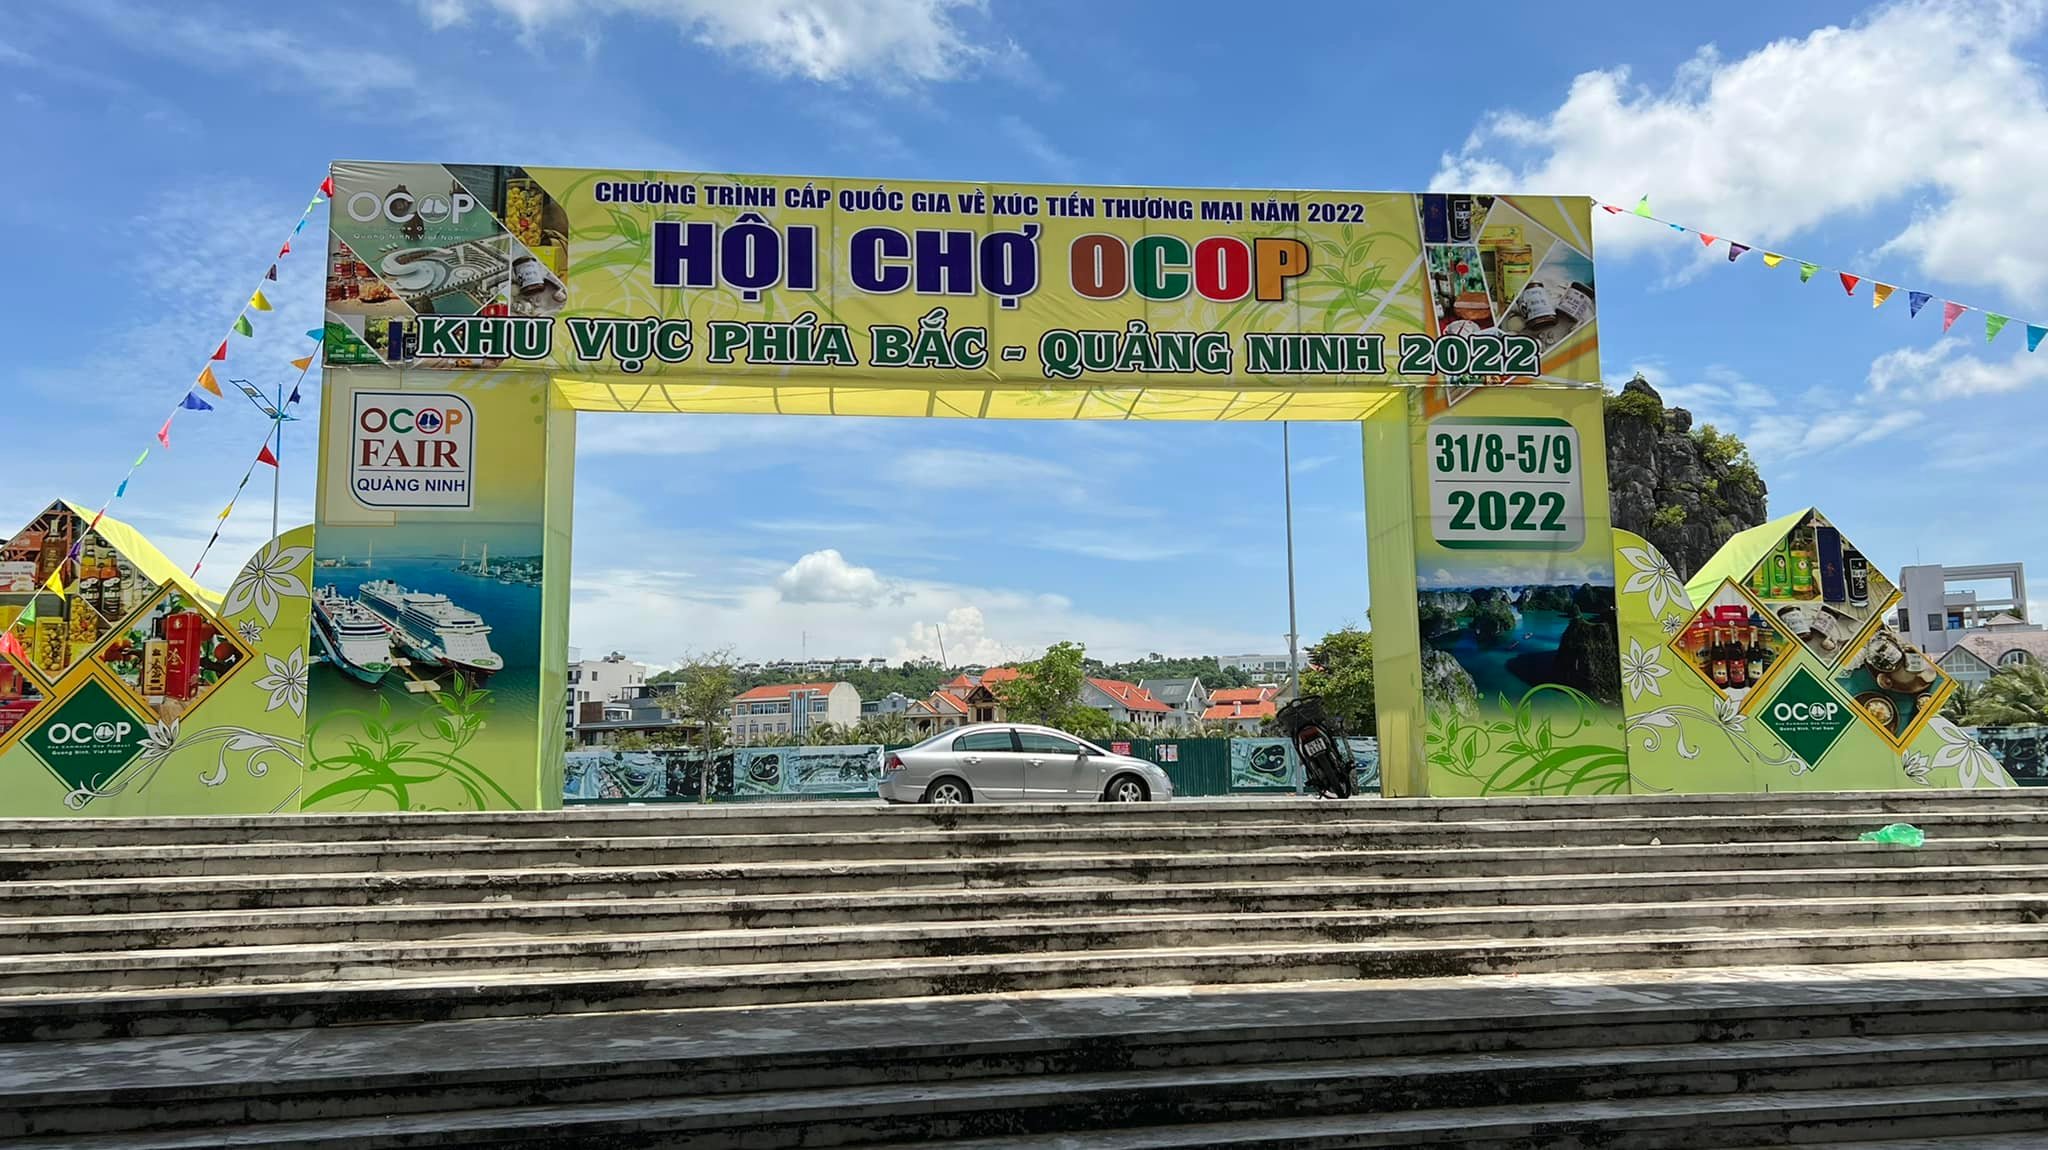 Hội chợ OCOP khu vực phía Bắc - Quảng Ninh 2022